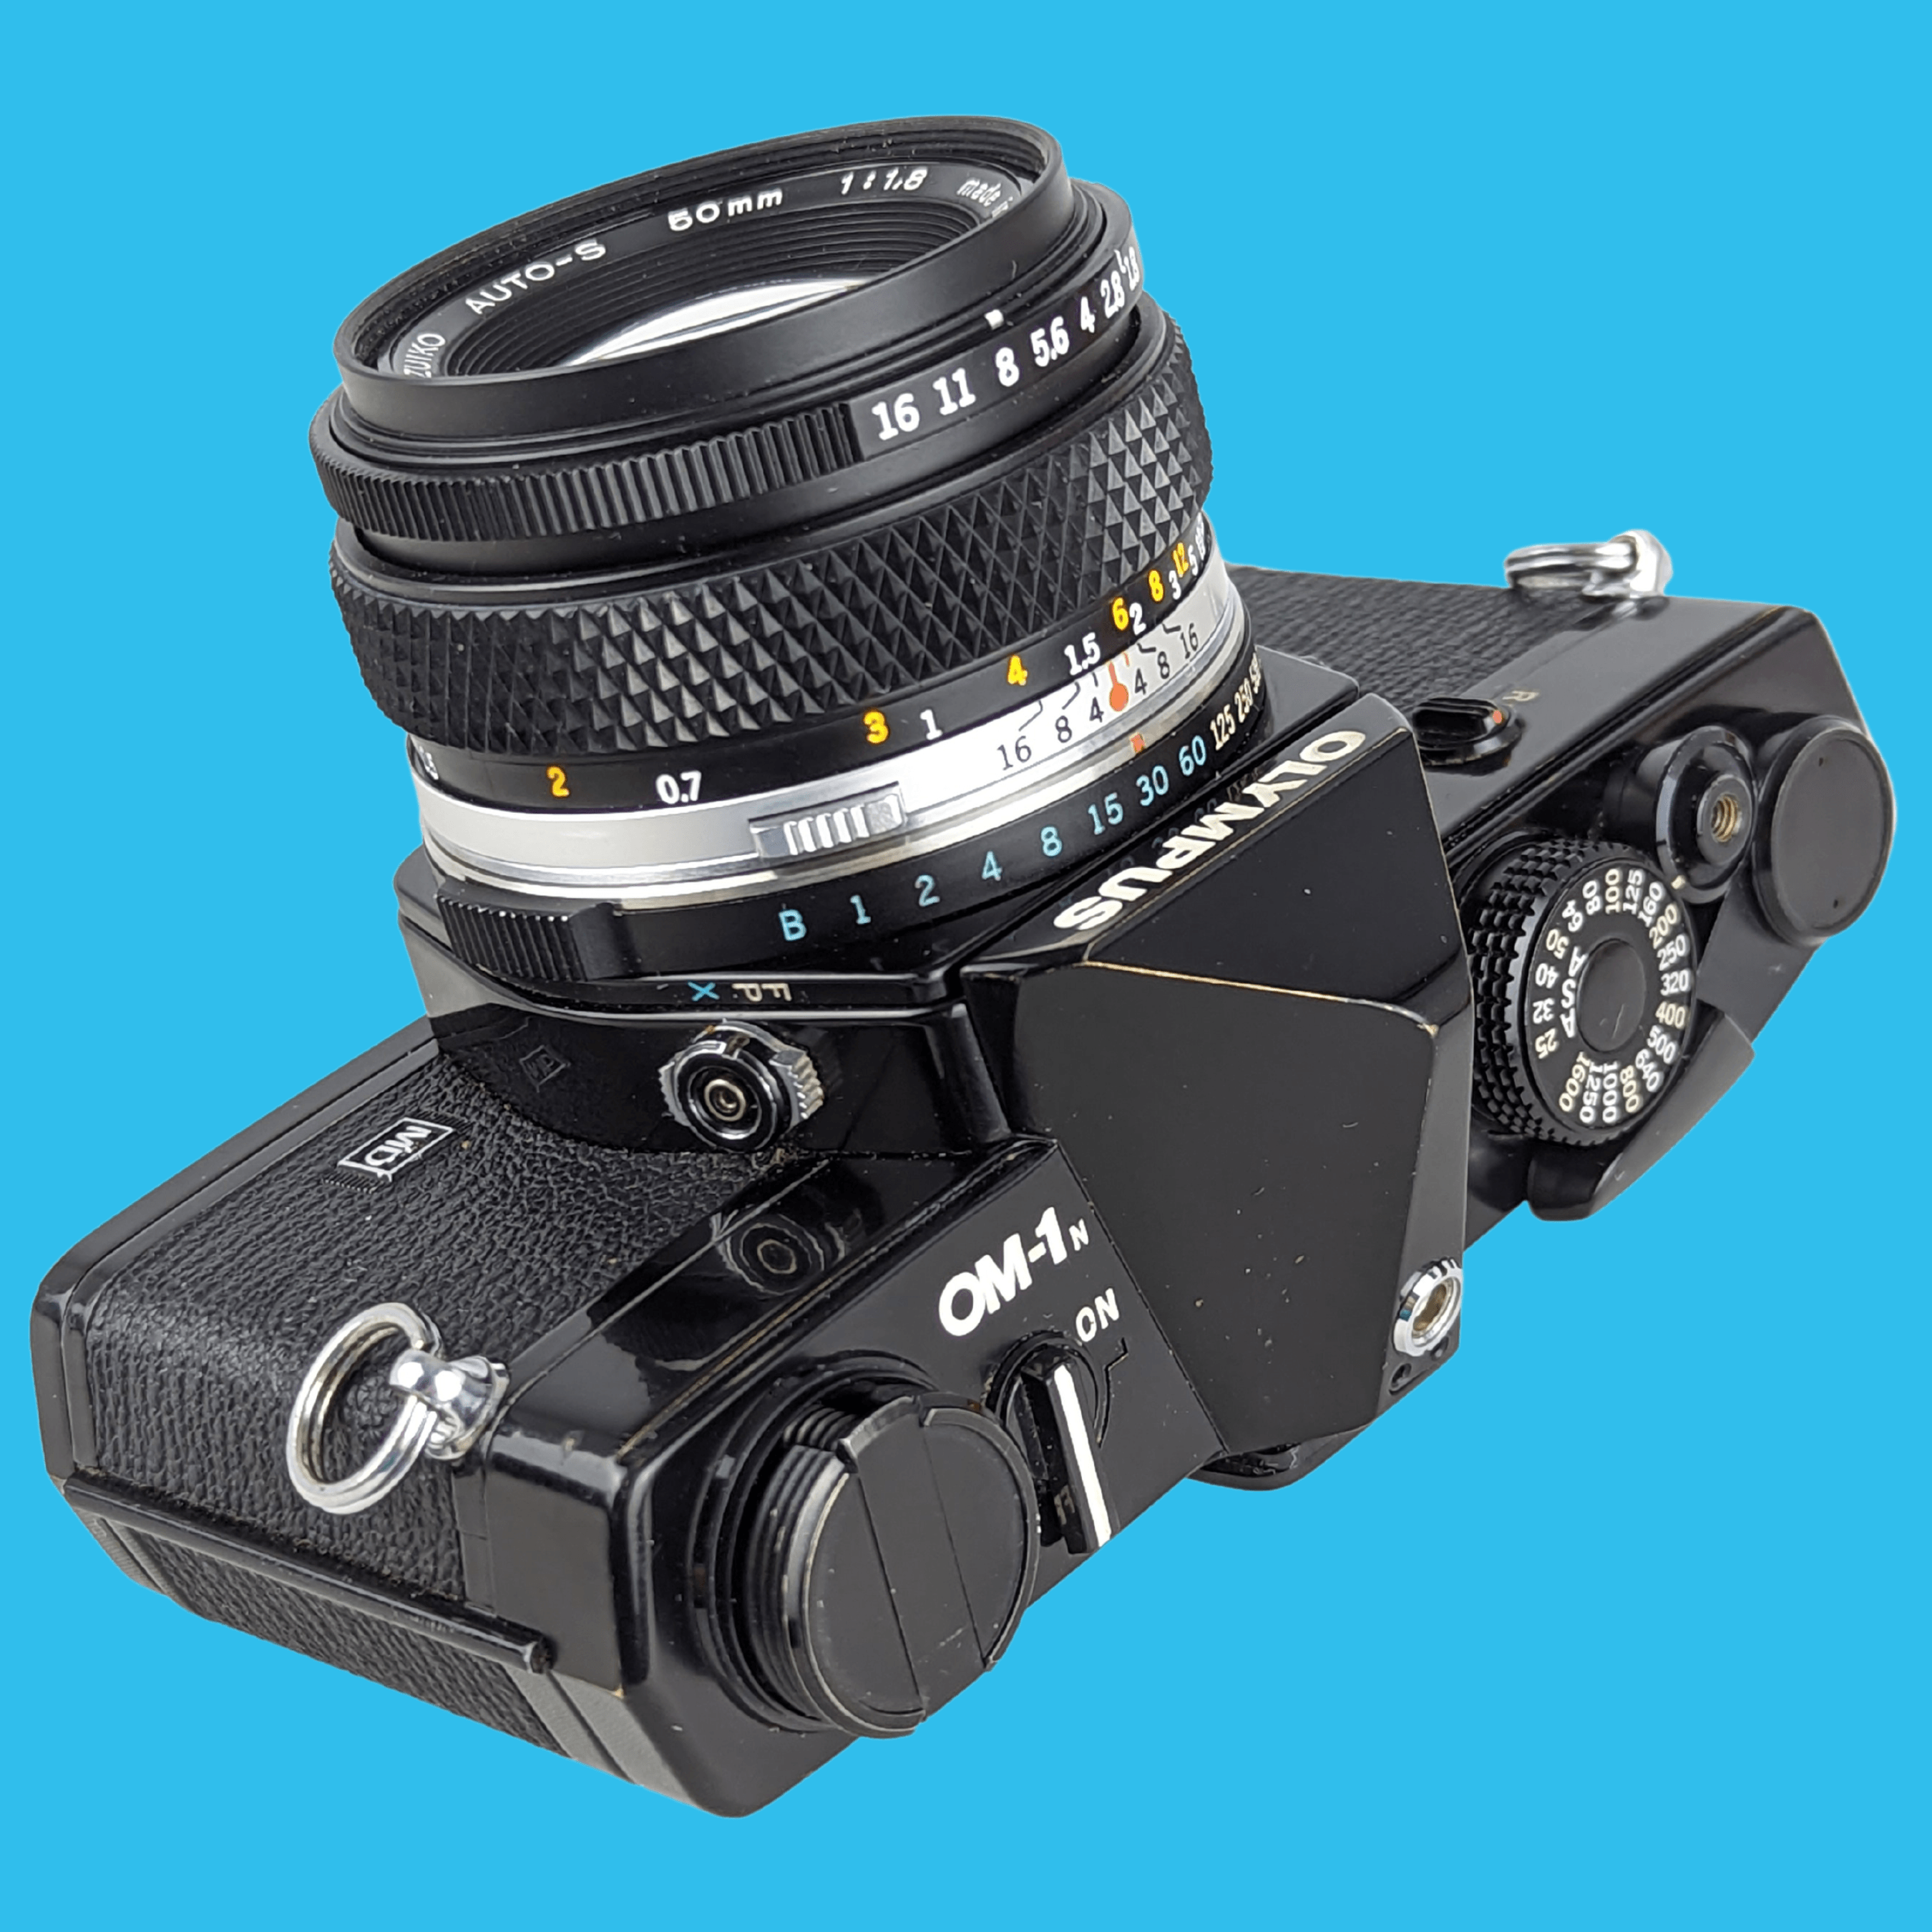 OLYMPUSフィルムカメラ 全自動式 - フィルムカメラ